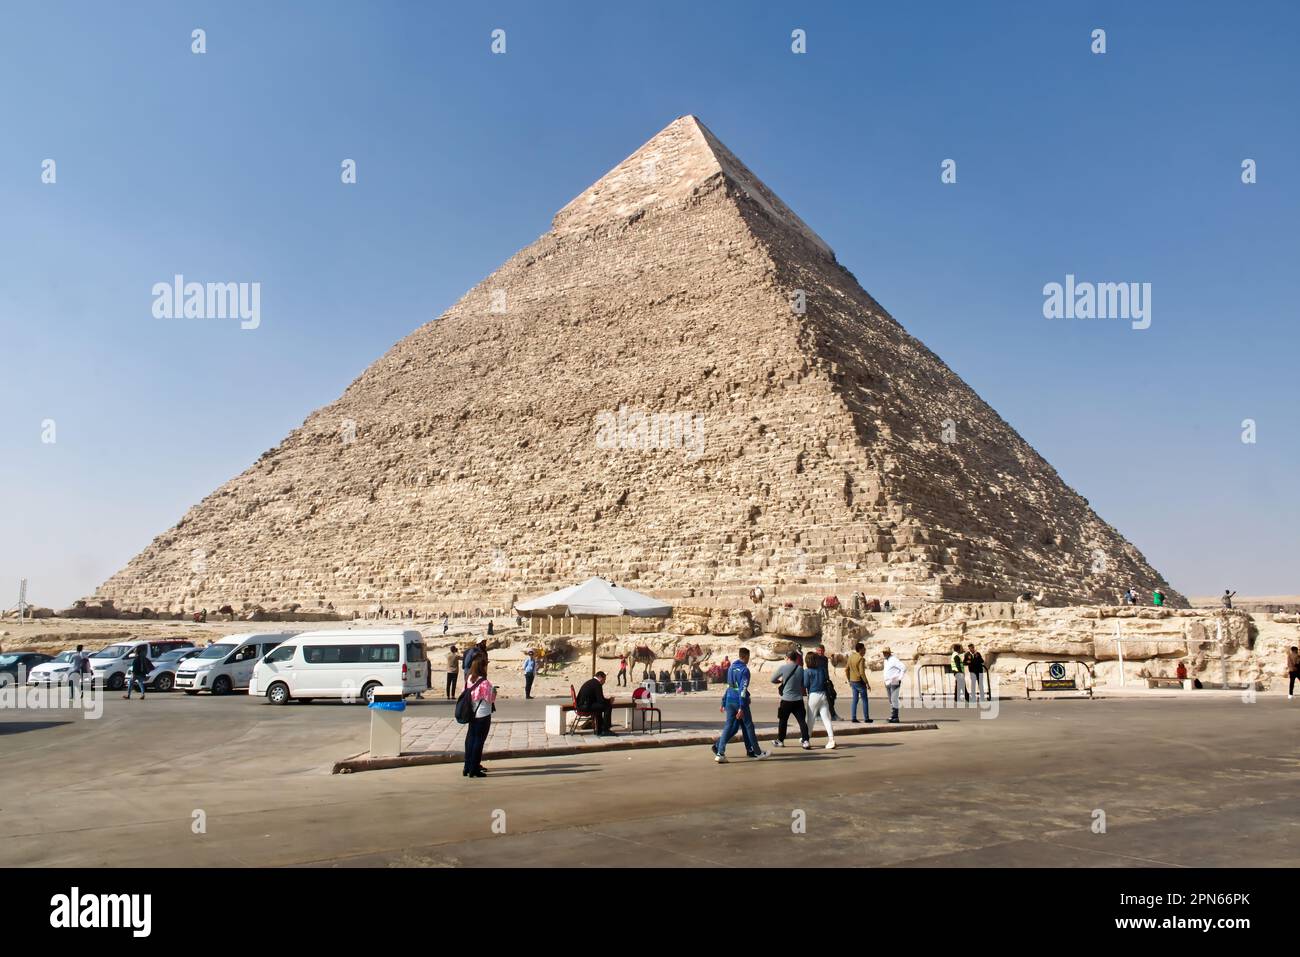 La pyramide de Khafre (Chephren) dans le plateau de Gizeh. Pyramides historiques d'Égypte. Banque D'Images